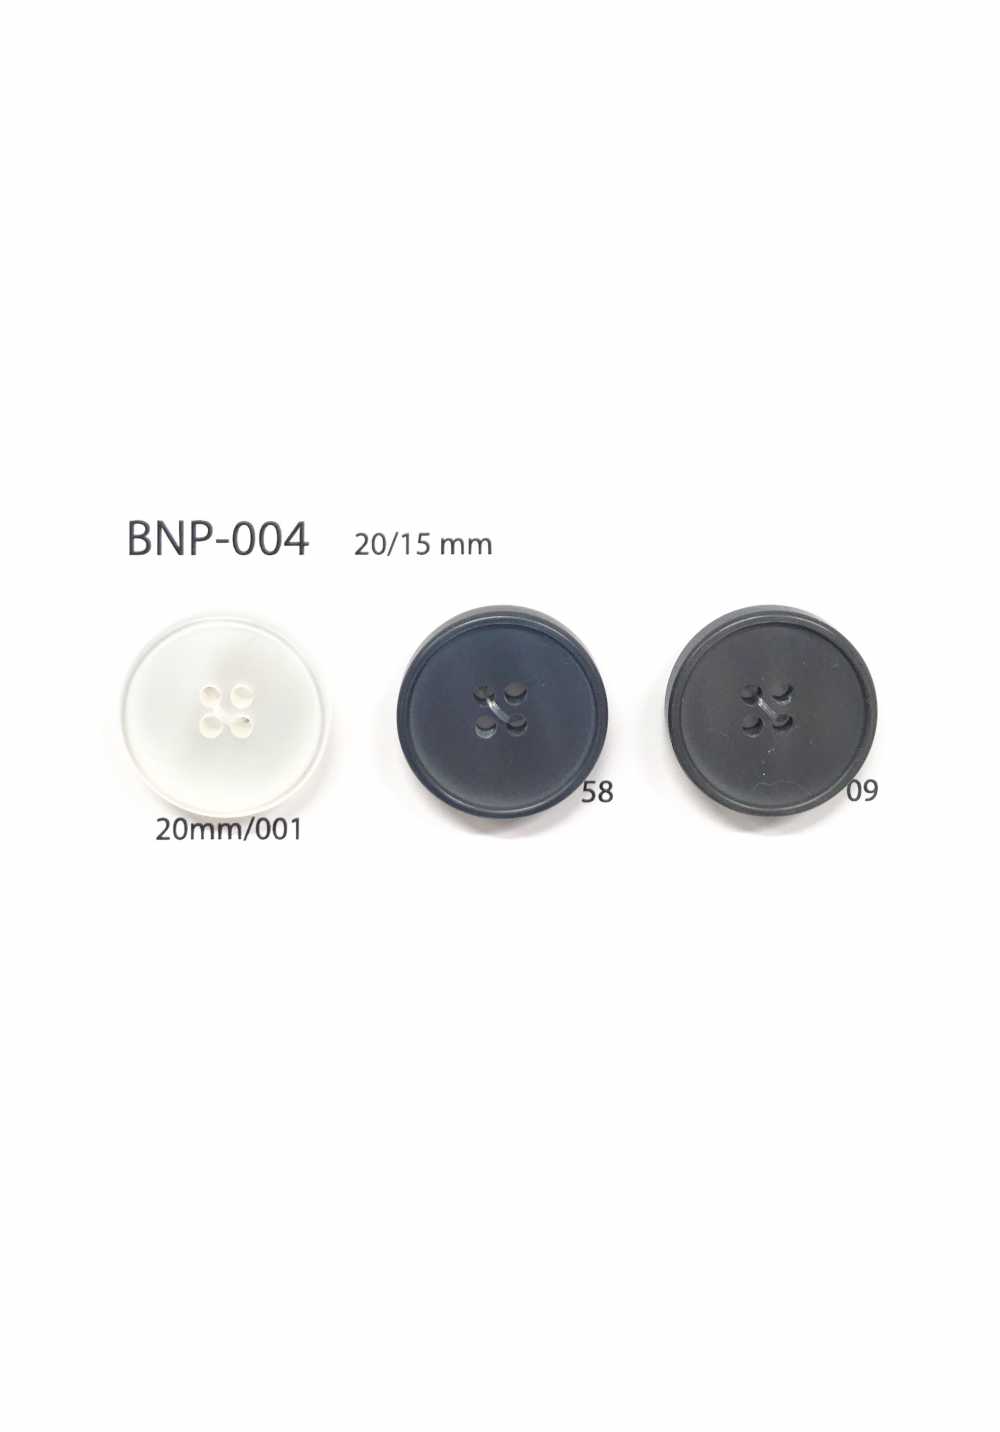 BNP-004 4-Loch-Knopf Aus Biopolyester[Taste] IRIS